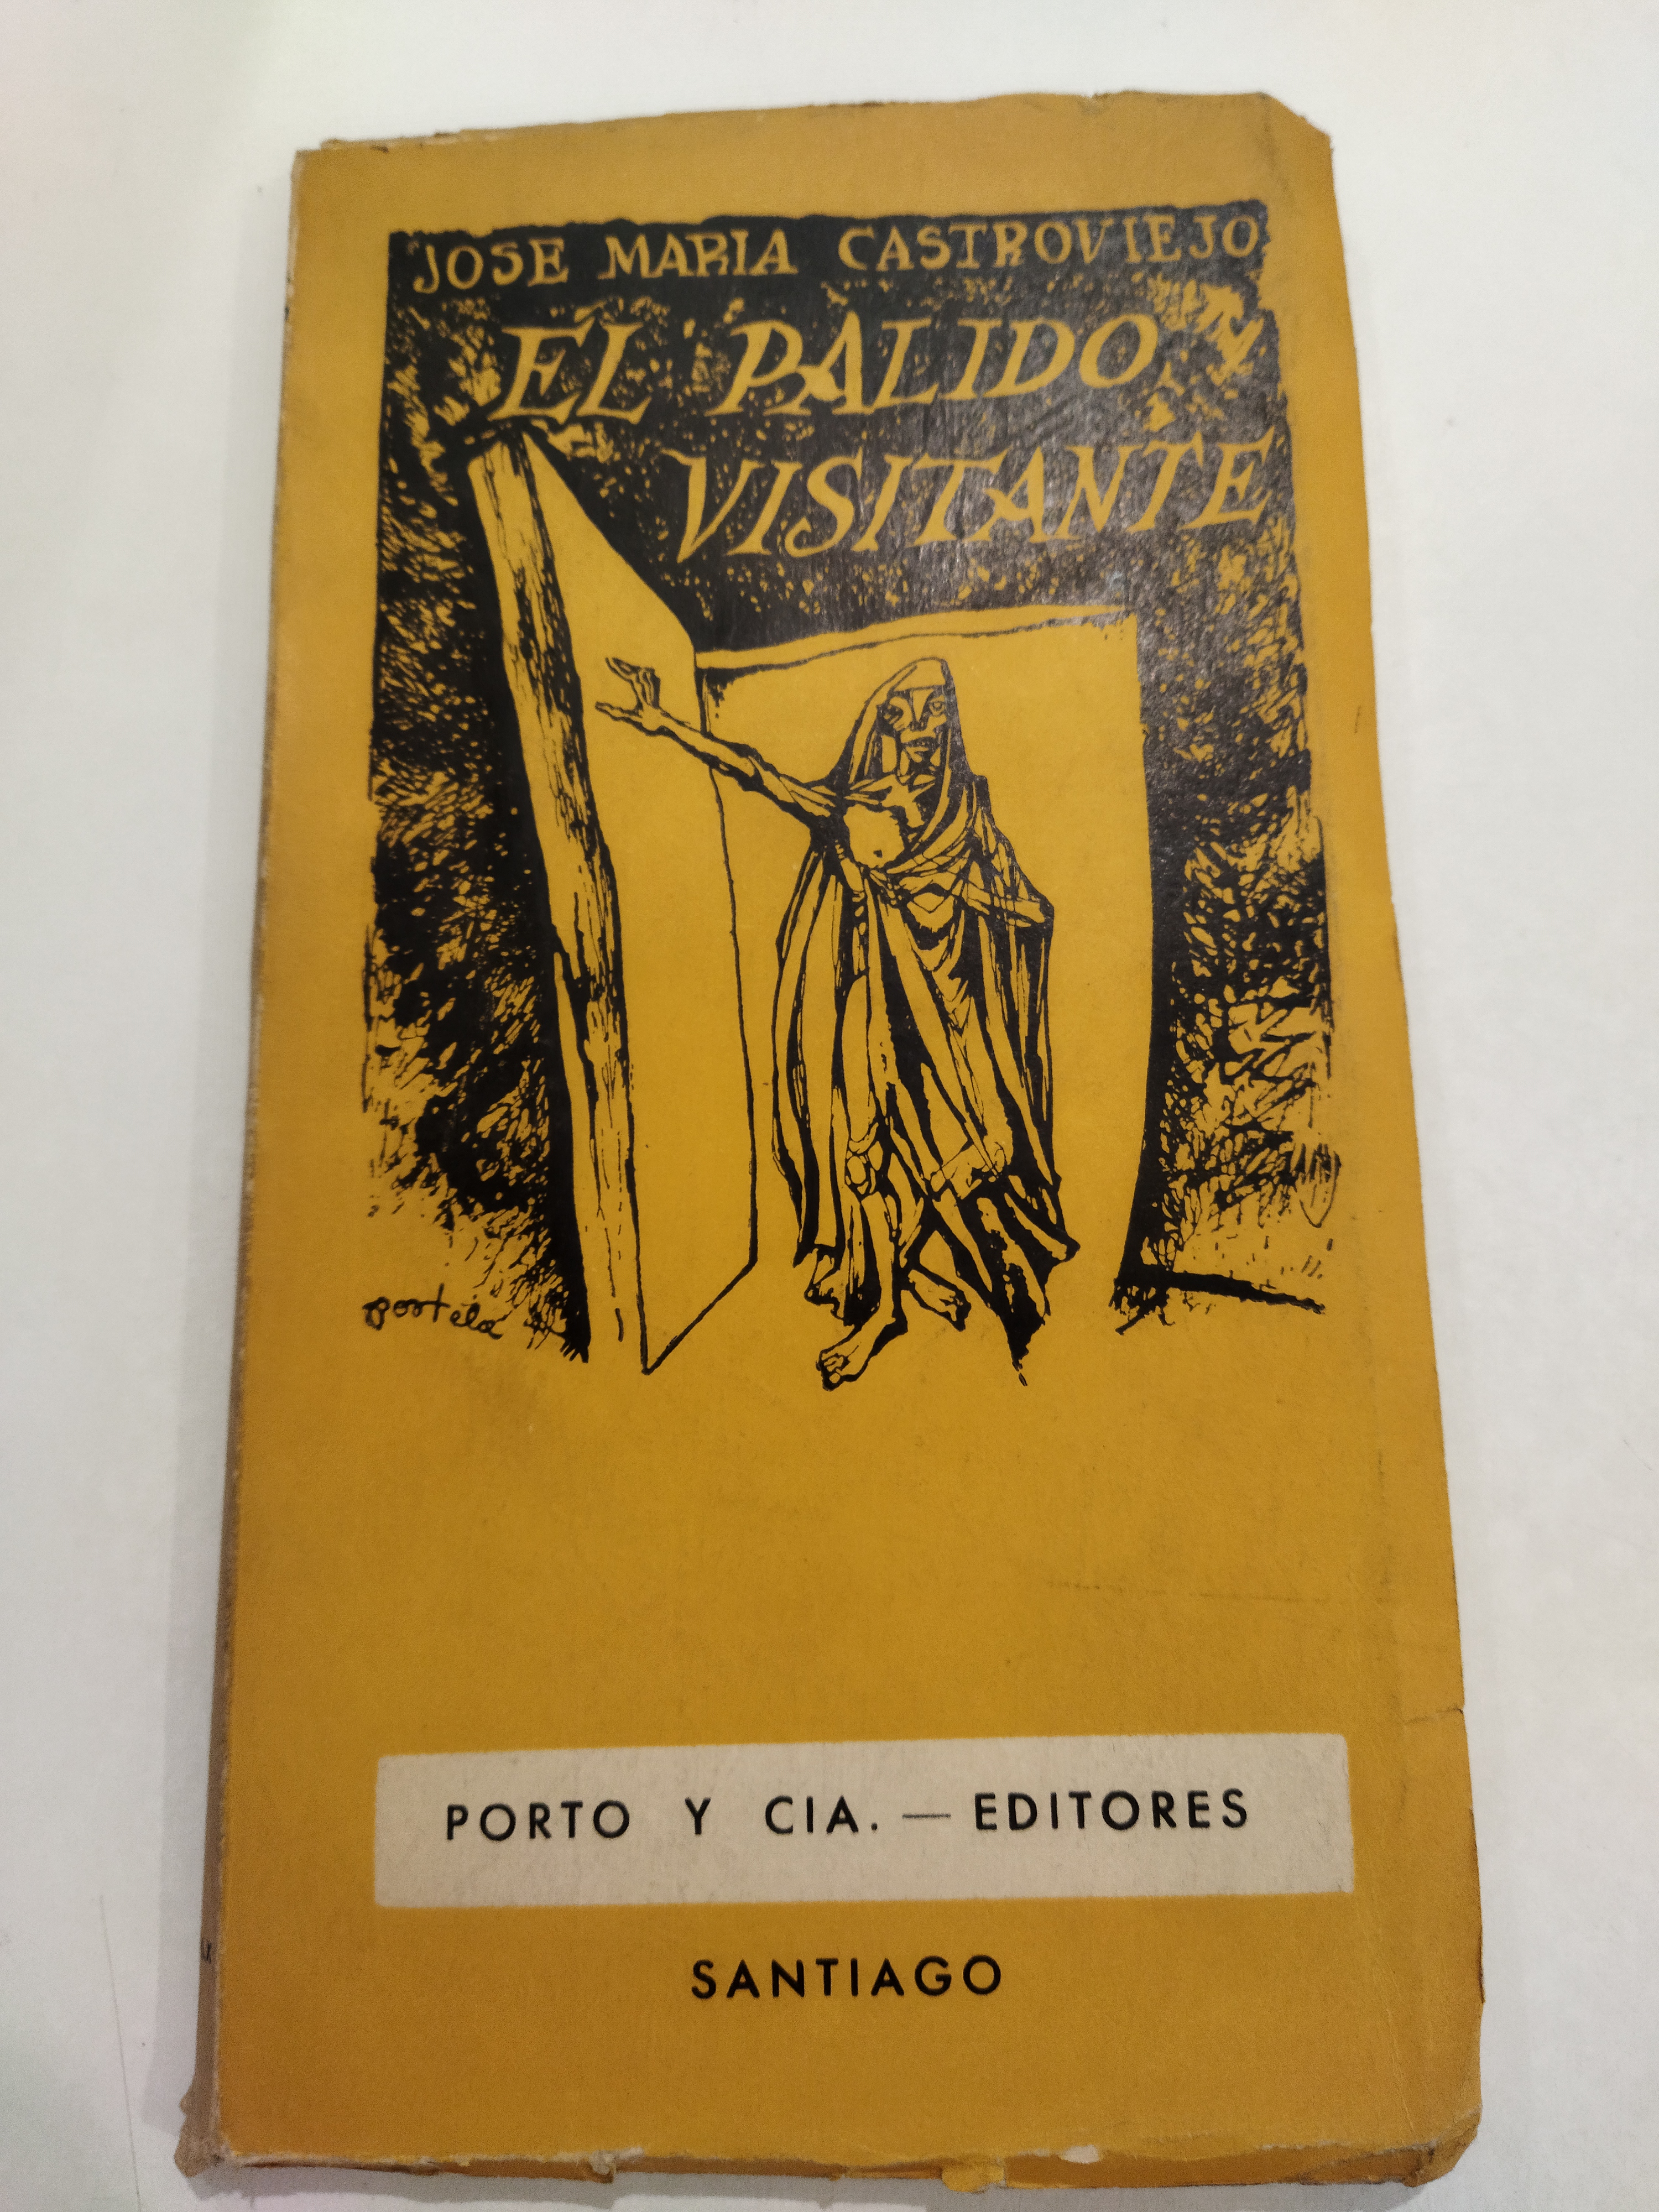 Don Juan Tenorio « El refugiao » - Don Juan Tenorio «el refugiao» - Presses  universitaires du Midi